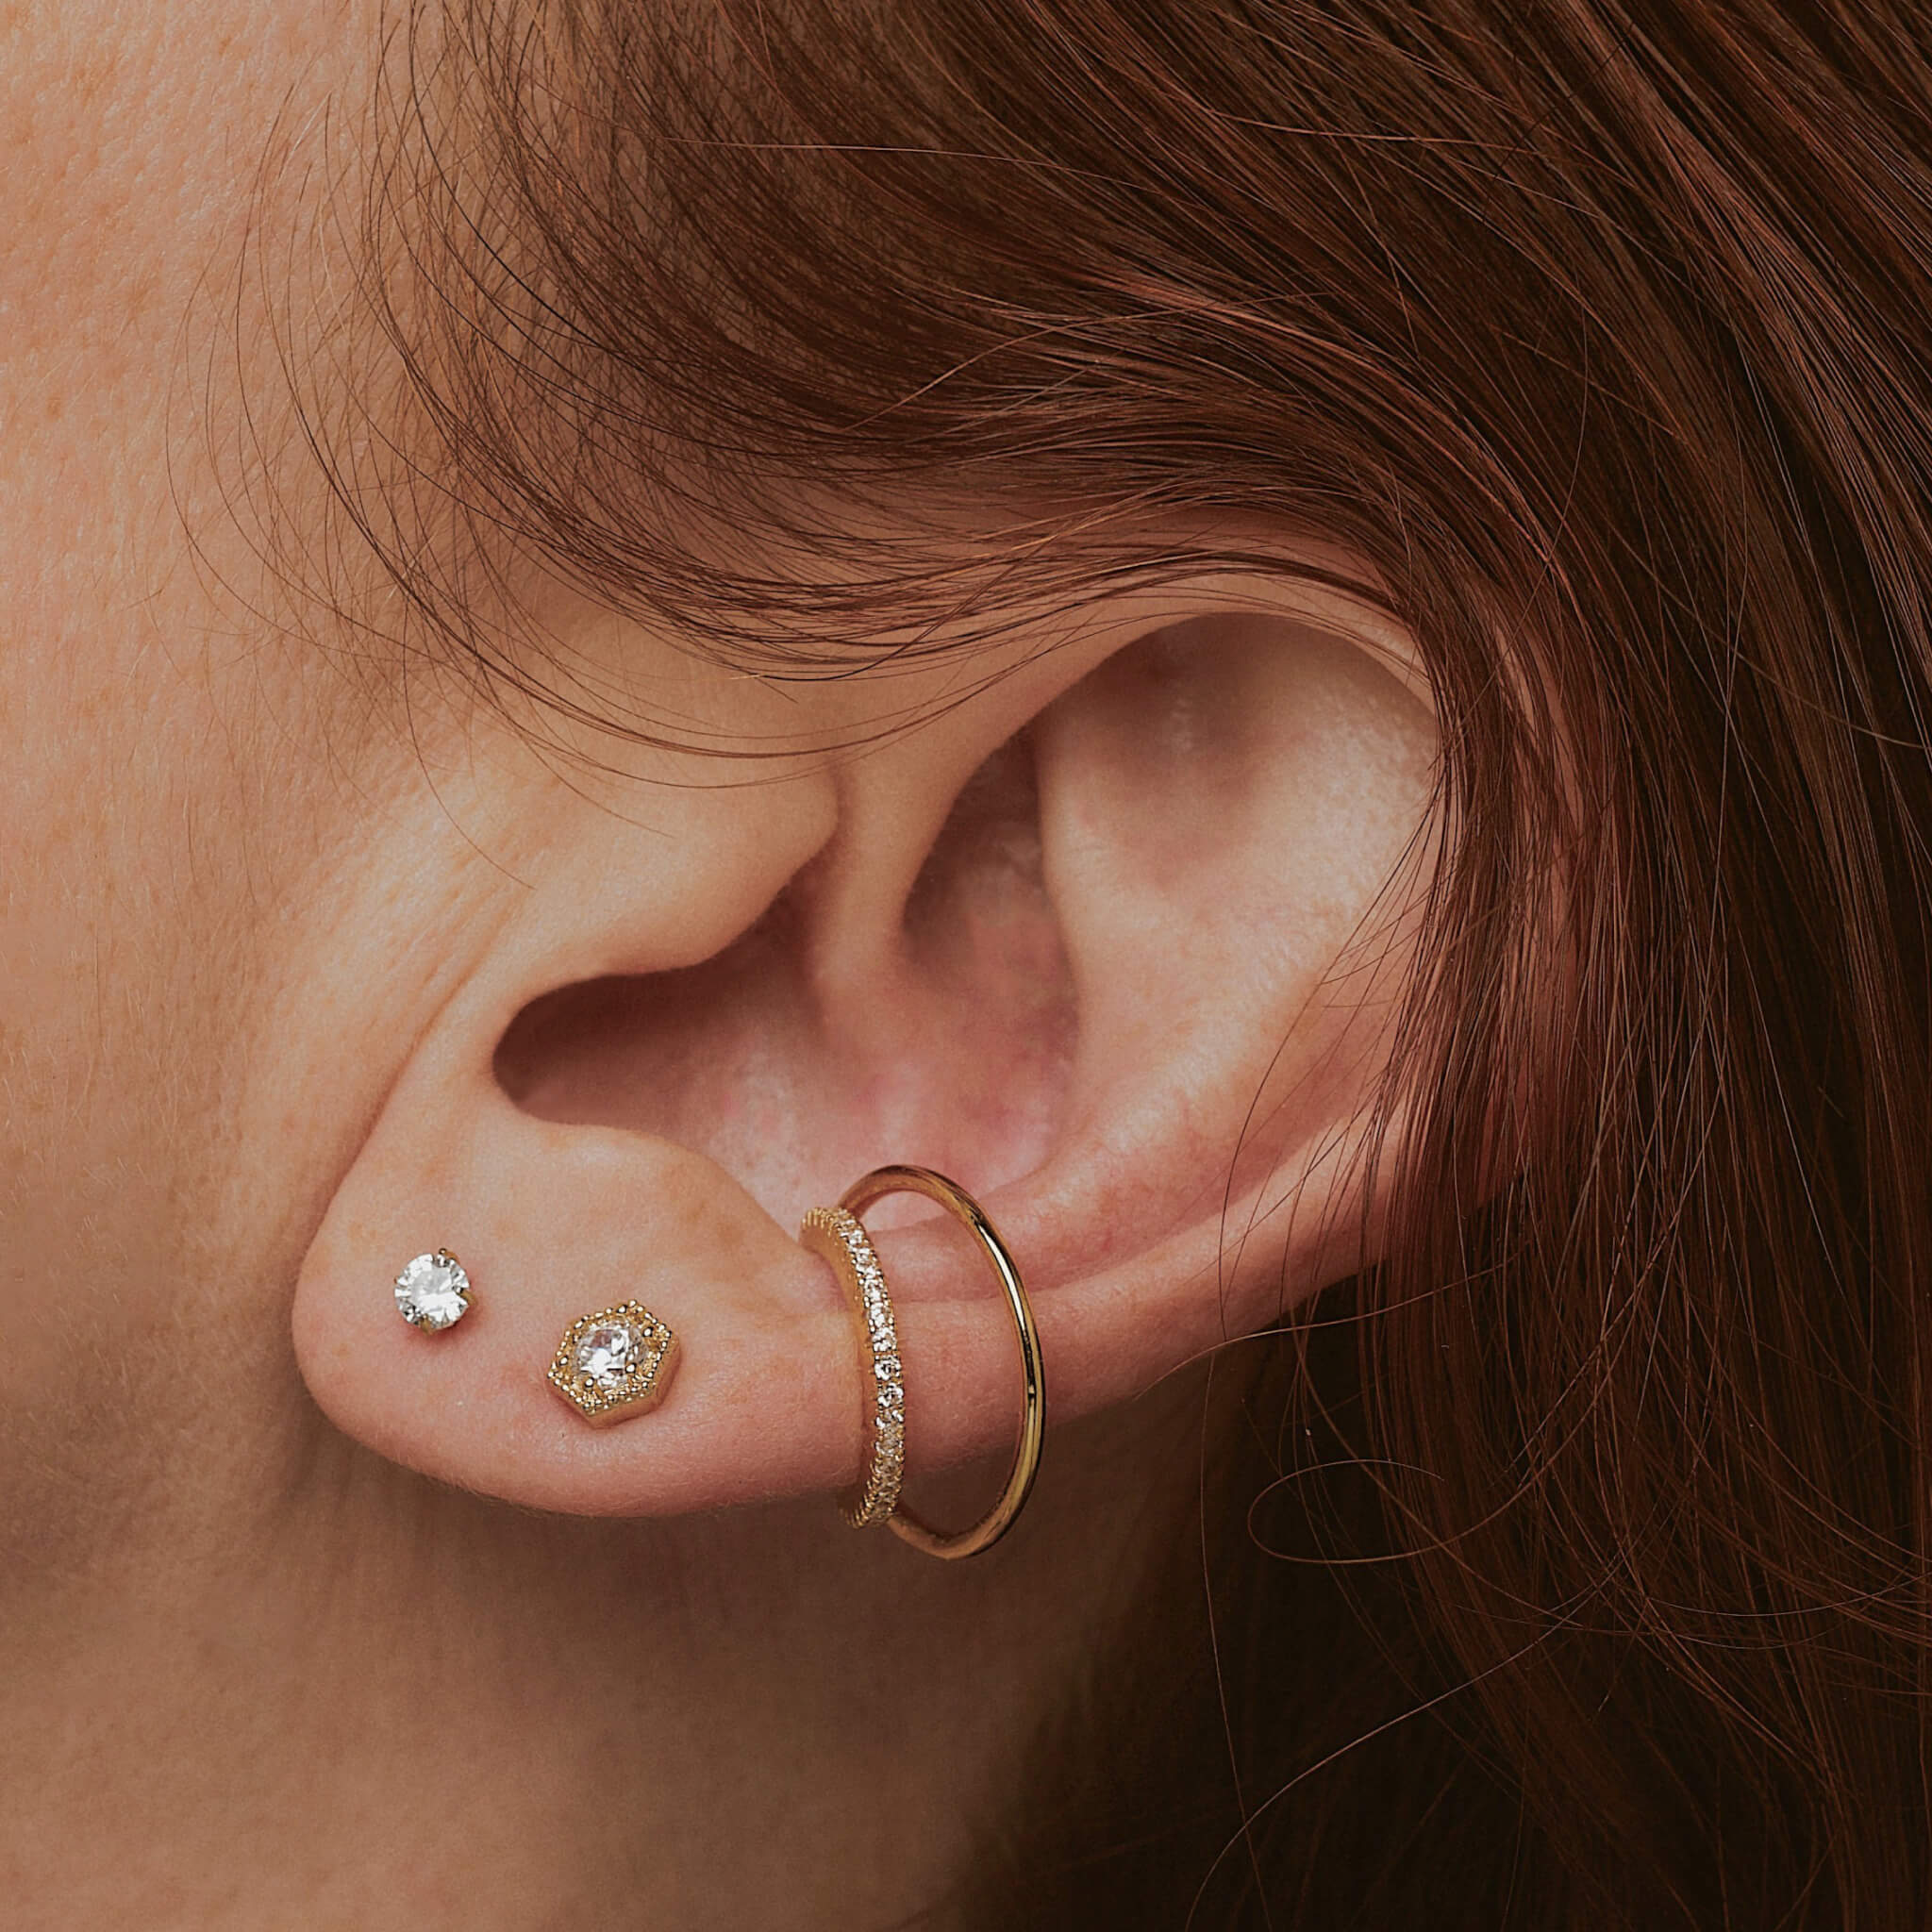 Top 5 Best Earrings For Newly Pierced Ears 2020 Review  Learning Jewelry   Ear piercings Stud earrings unique Flower earrings studs